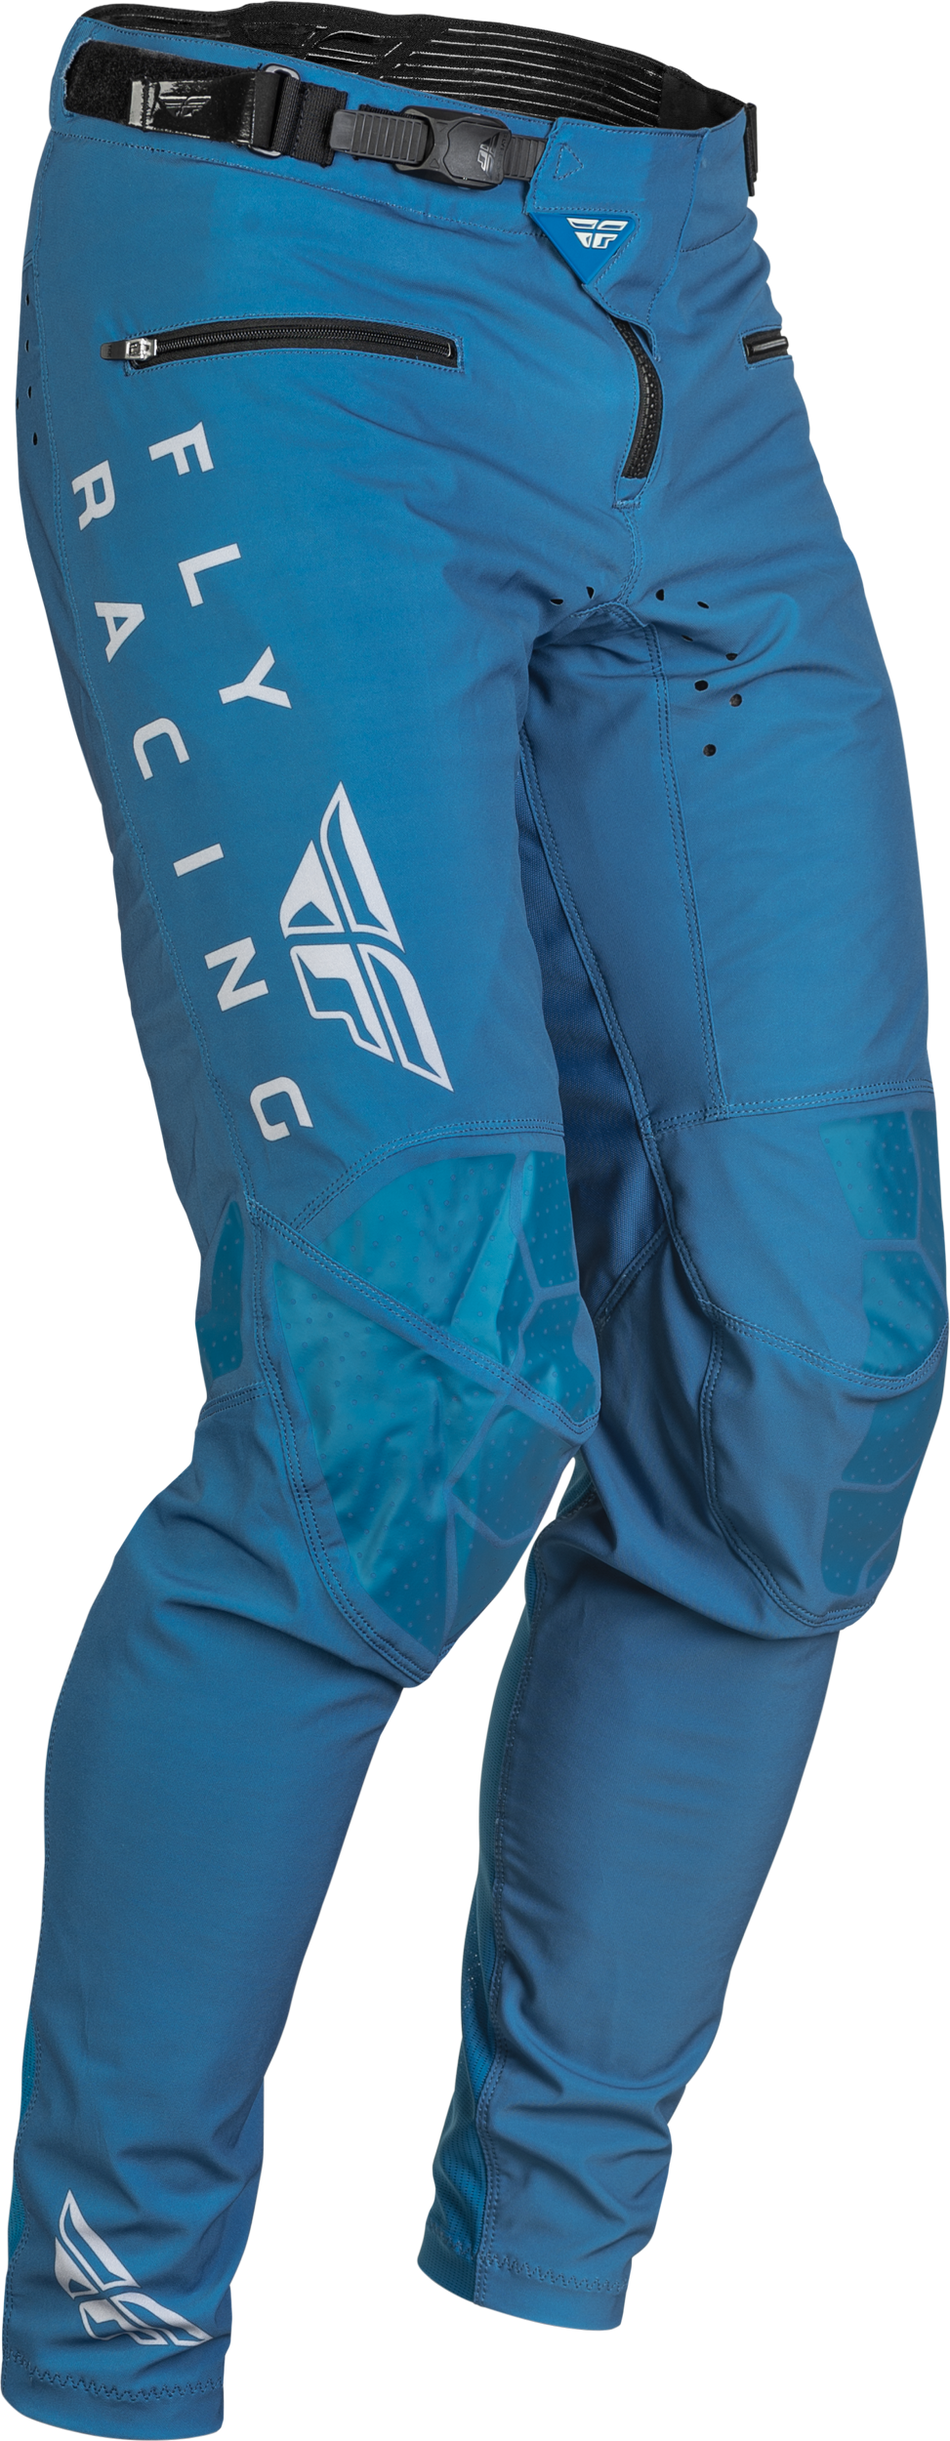 FLY RACING Radium Bicycle Pants Slate Blue/Grey Sz 28 376-04428